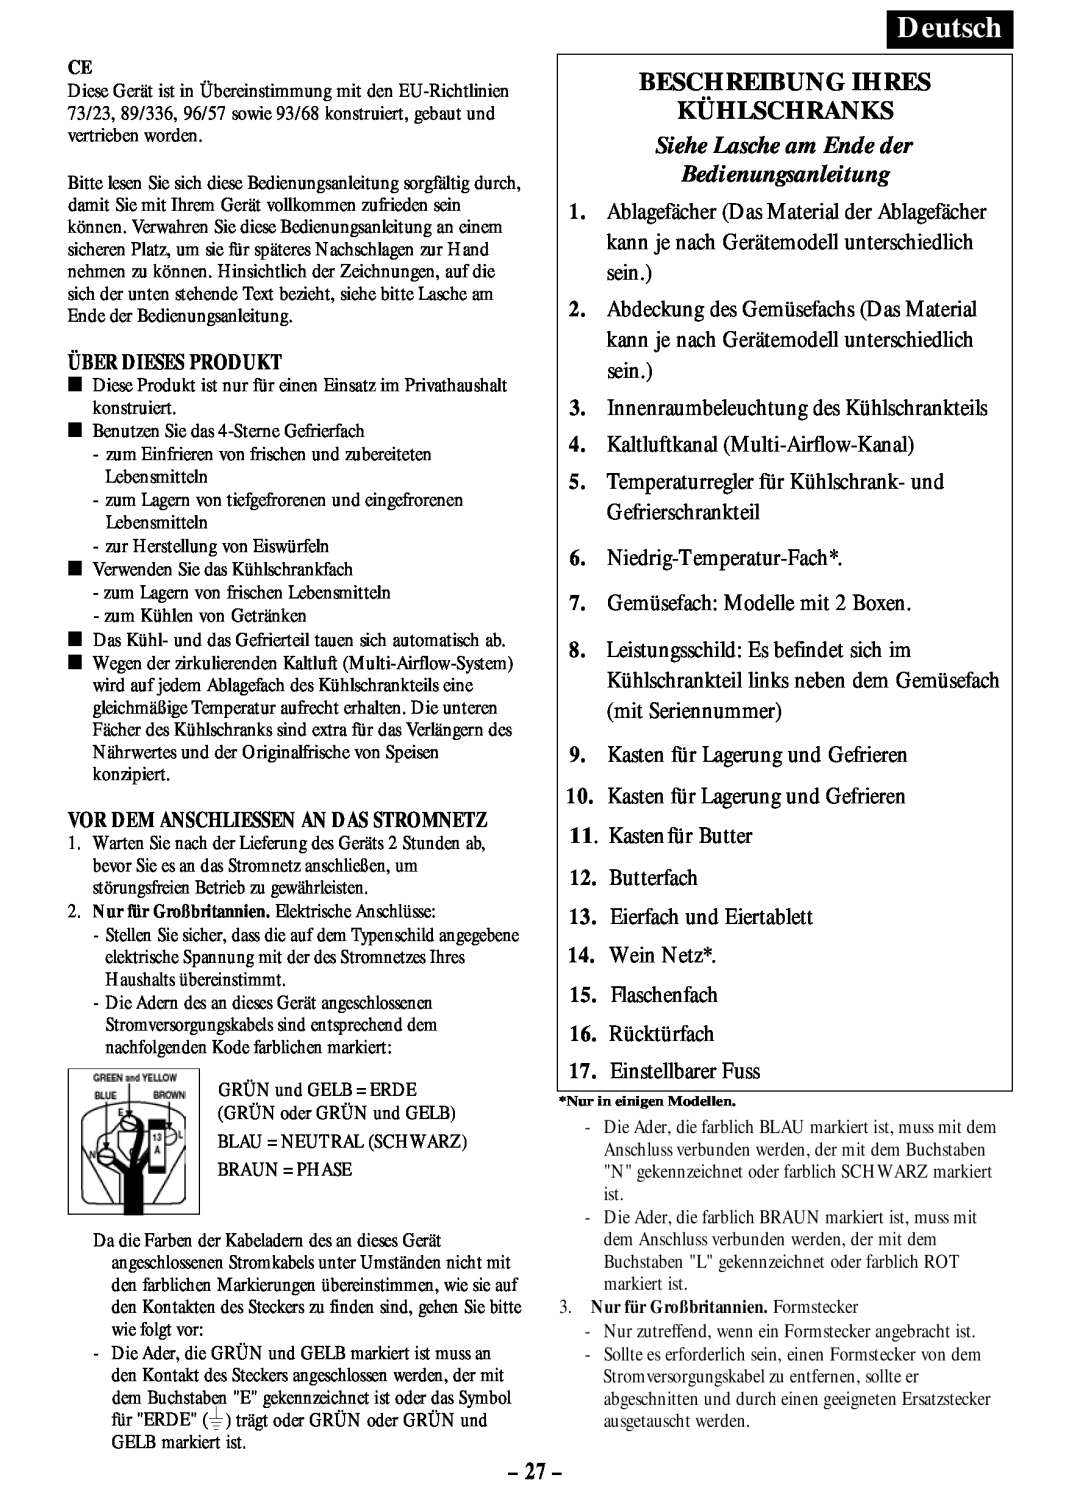 Opteka NF-347, NF1-370, NF1-350 Beschreibung Ihres Kühlschranks, 27, Siehe Lasche am Ende der Bedienungsanleitung, Deutsch 